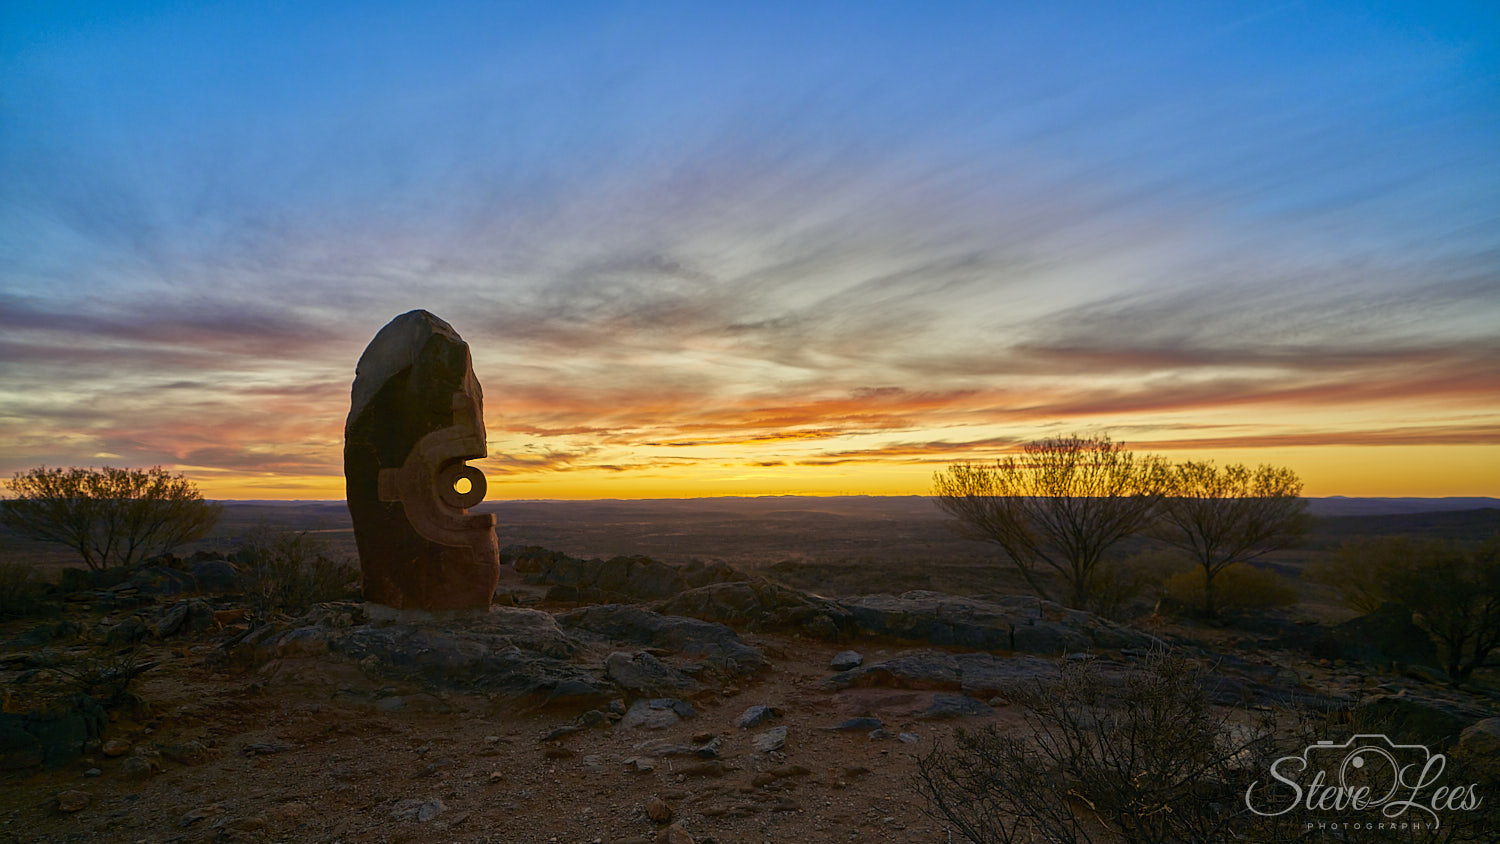 Living Desert and Sculptures Sunset